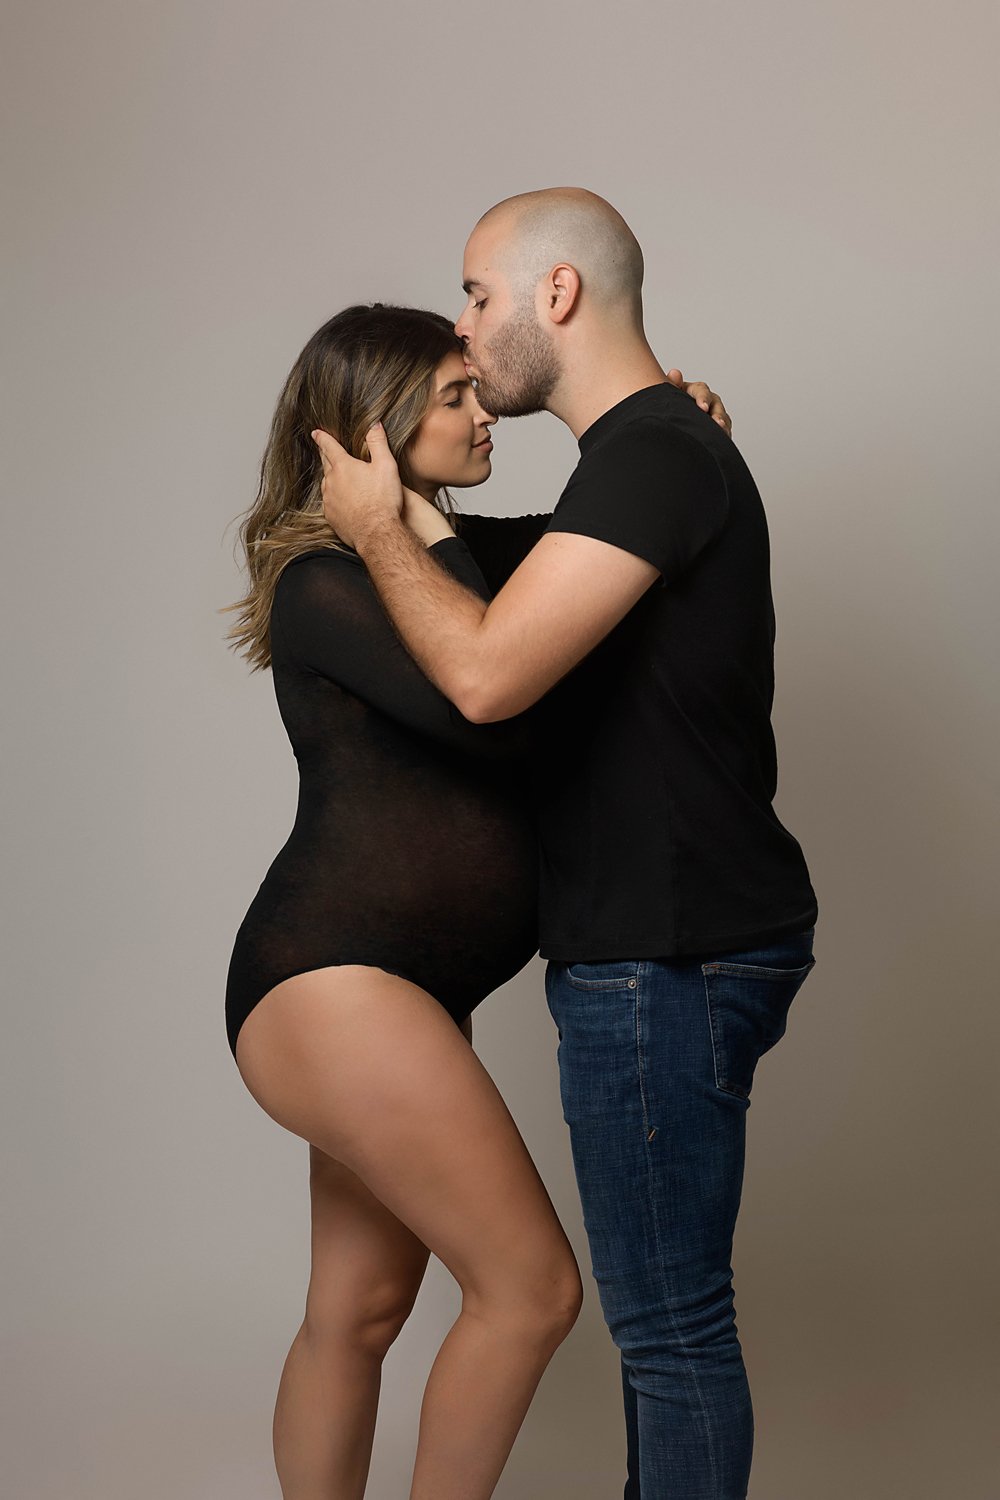 kimberly-gb-photography-maternity-maternidad-fotografia-embarazo-bebe-fotografo-puerto-rico-050.jpg